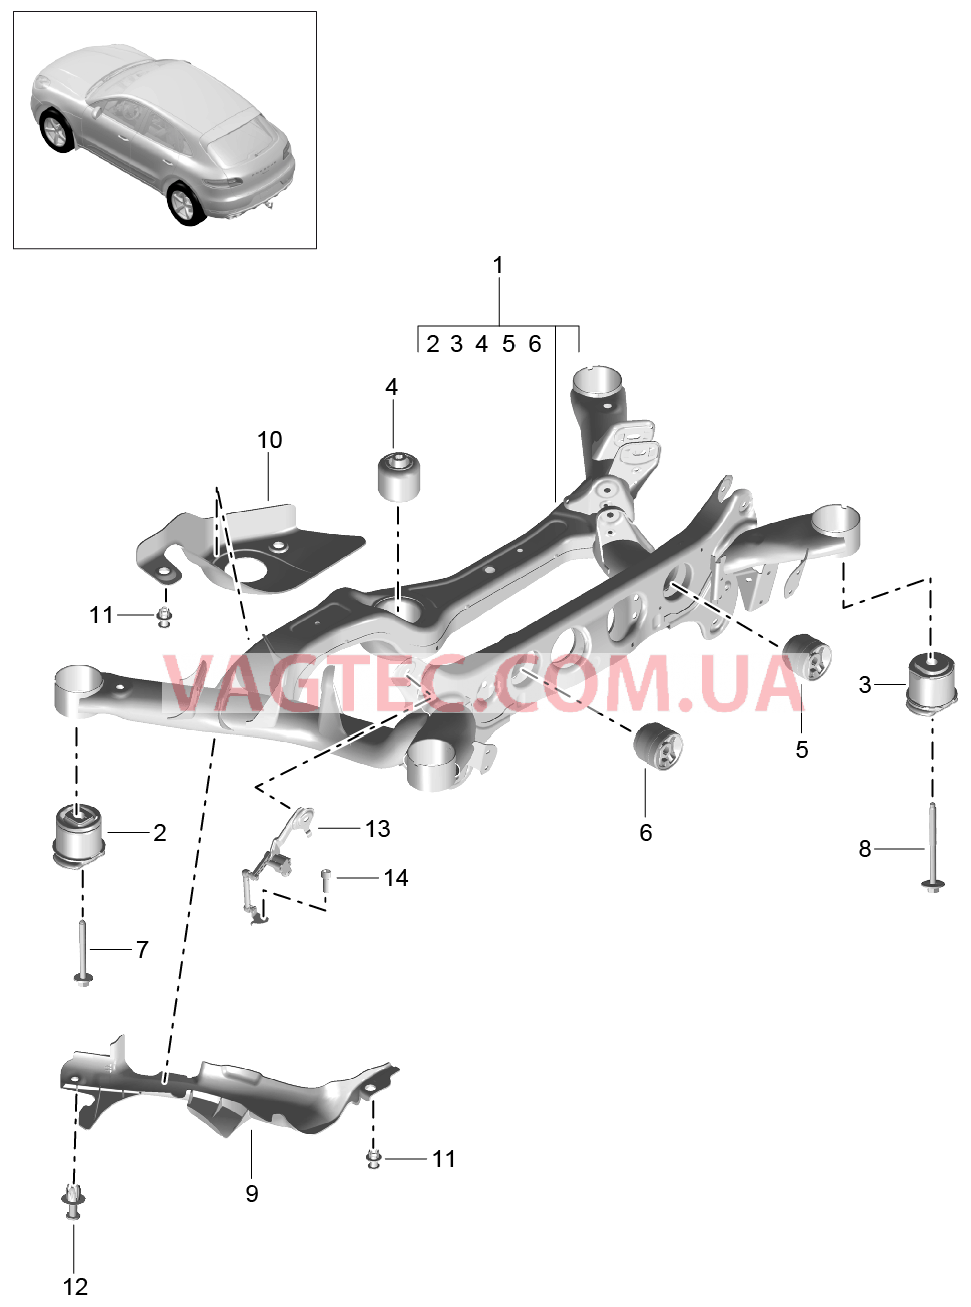 501-005 Задняя ось, Подрамник, Датчик уровня кузова для PORSCHE Macan 2014-2017USA